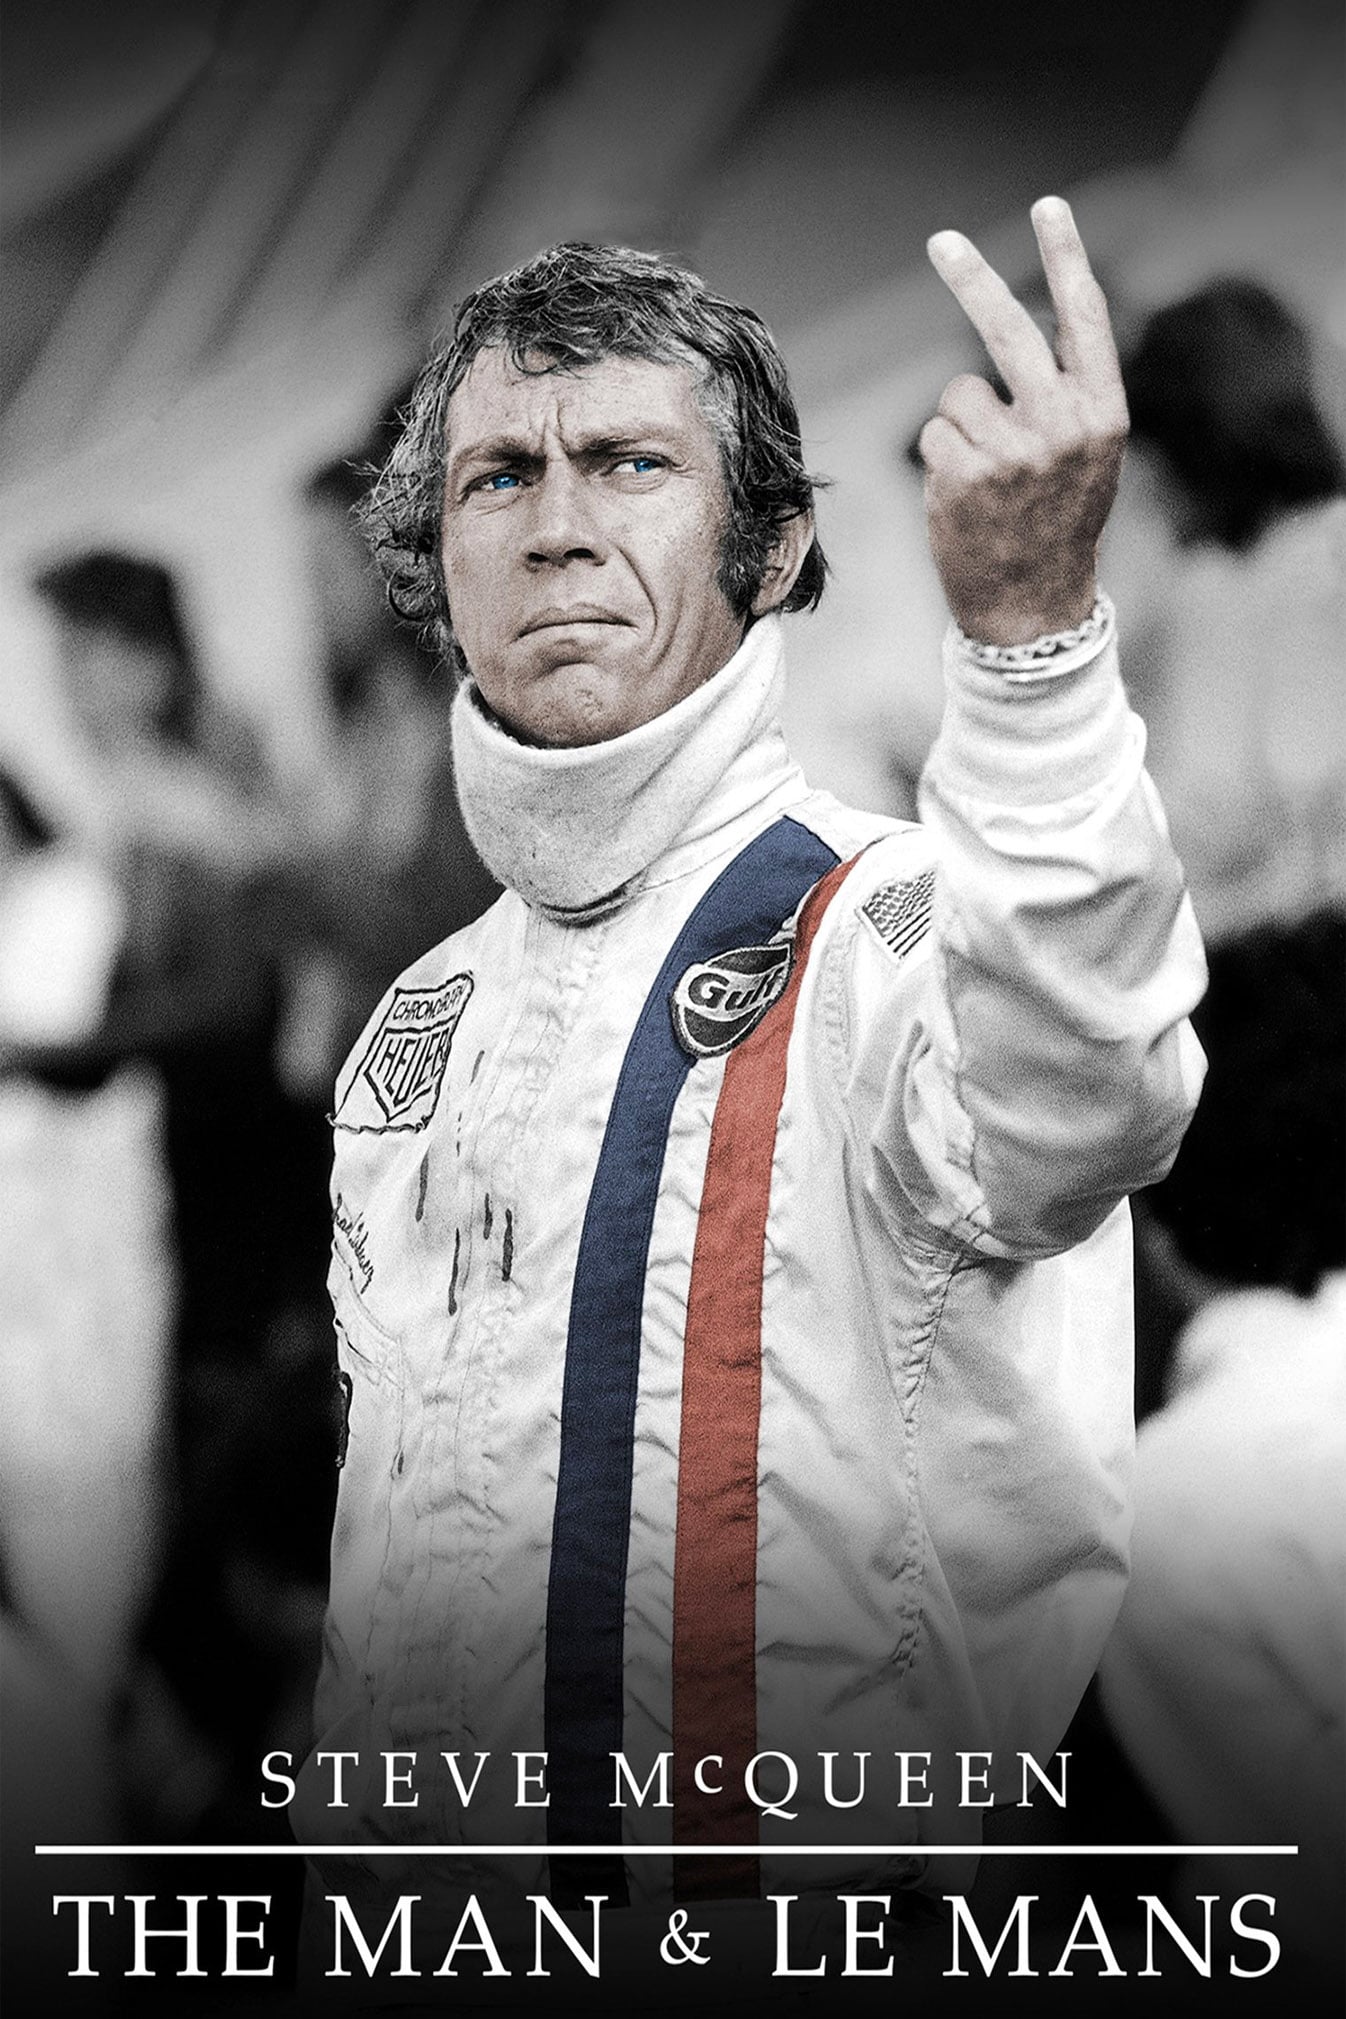 Steve McQueen - The Man & Le Mans